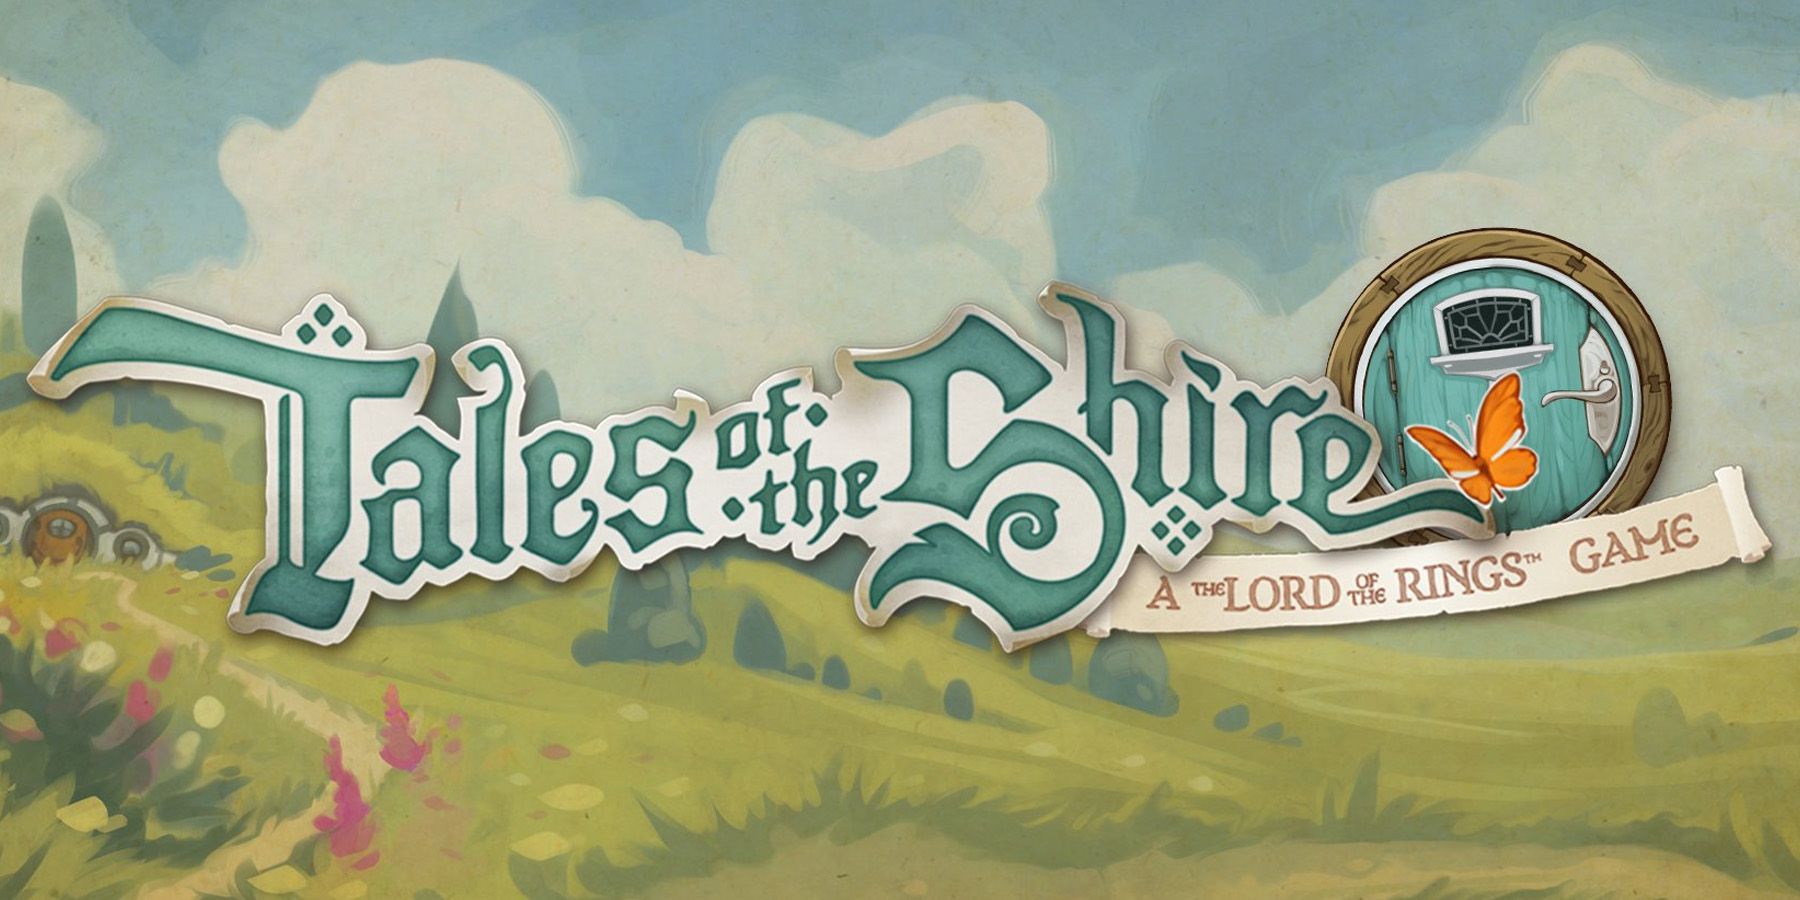 Logotipo de Tales of the Shire com as colinas de Hobbiton ao fundo.